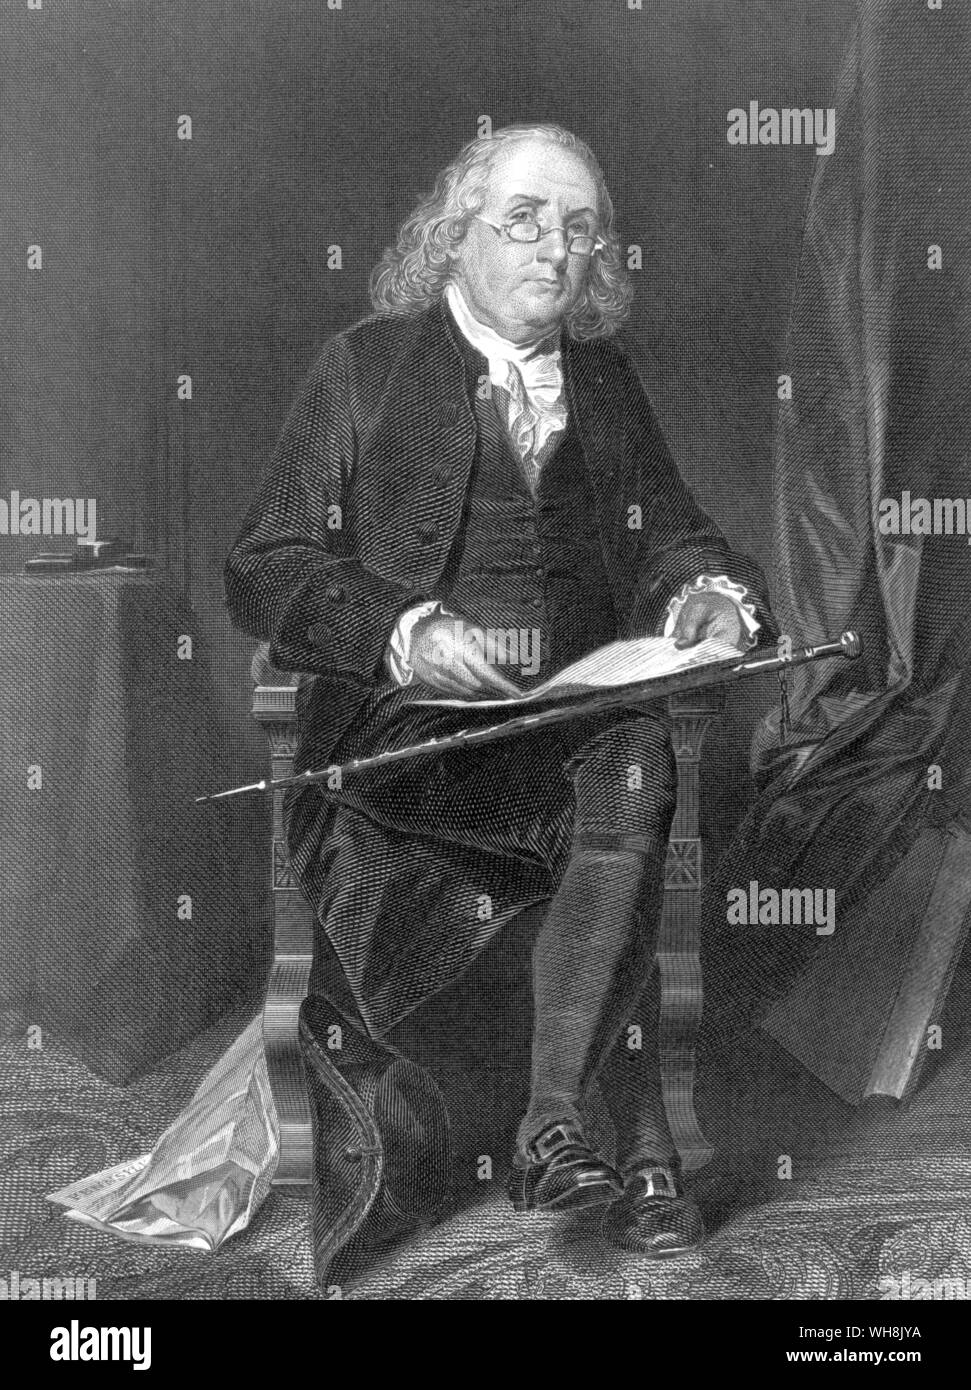 Benjamin Franklin (1706-1790), scientifique américain, écrivain, homme d'imprimeur et éditeur avec le Pennsylvania Gazette du Canada située à ses pieds Banque D'Images